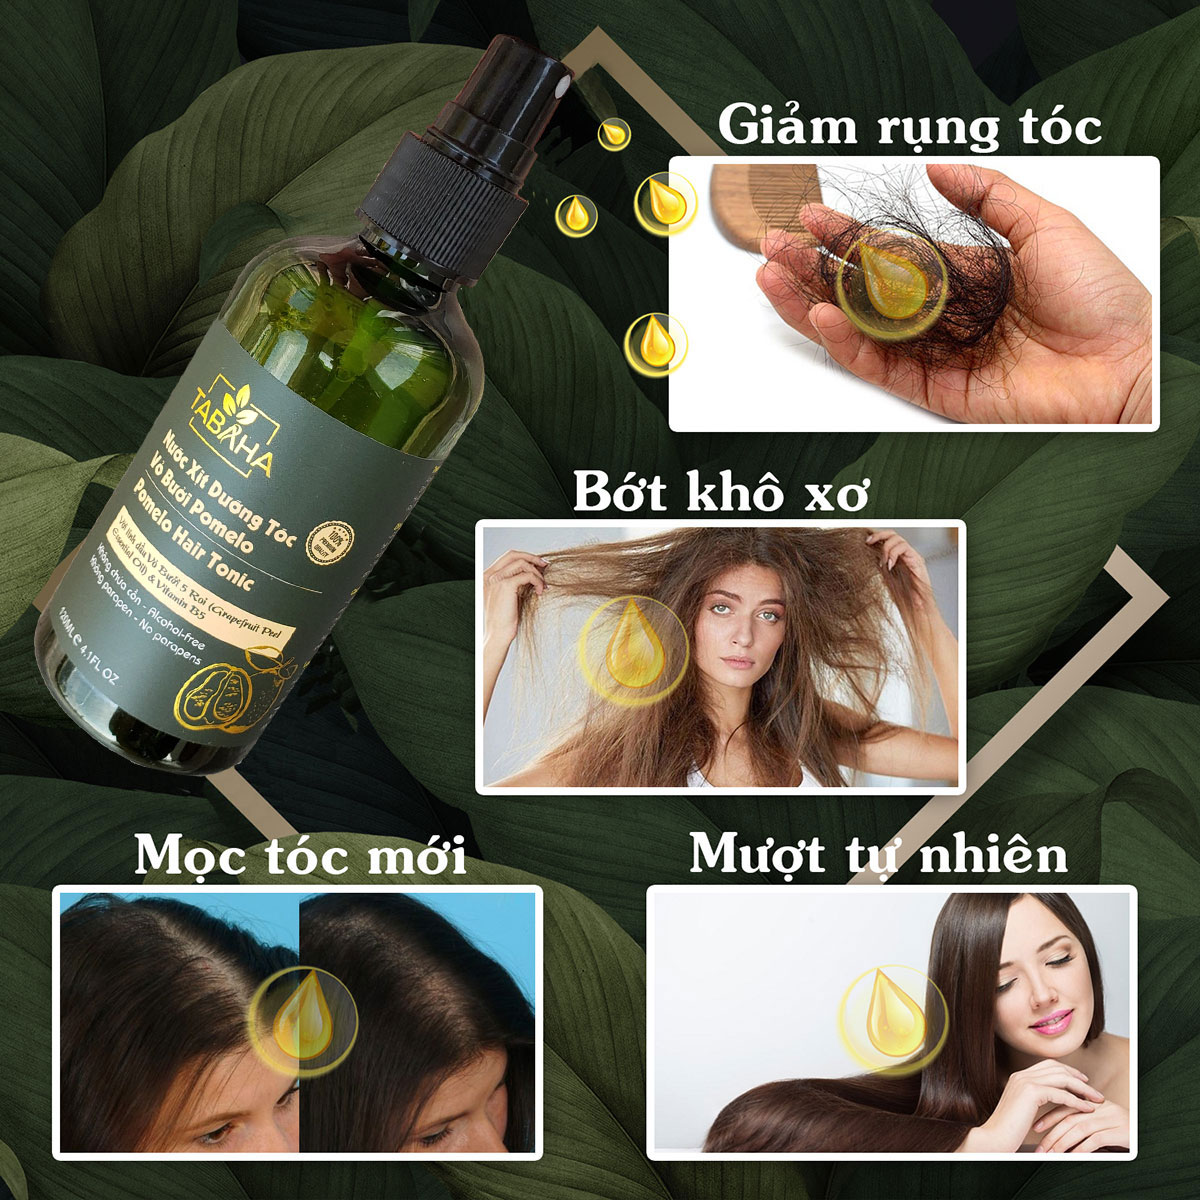 Tinh dầu bưởi dưỡng tóc Pomelo Tabaha 120ml giúp giảm rụng tóc cho mẹ sau sinh